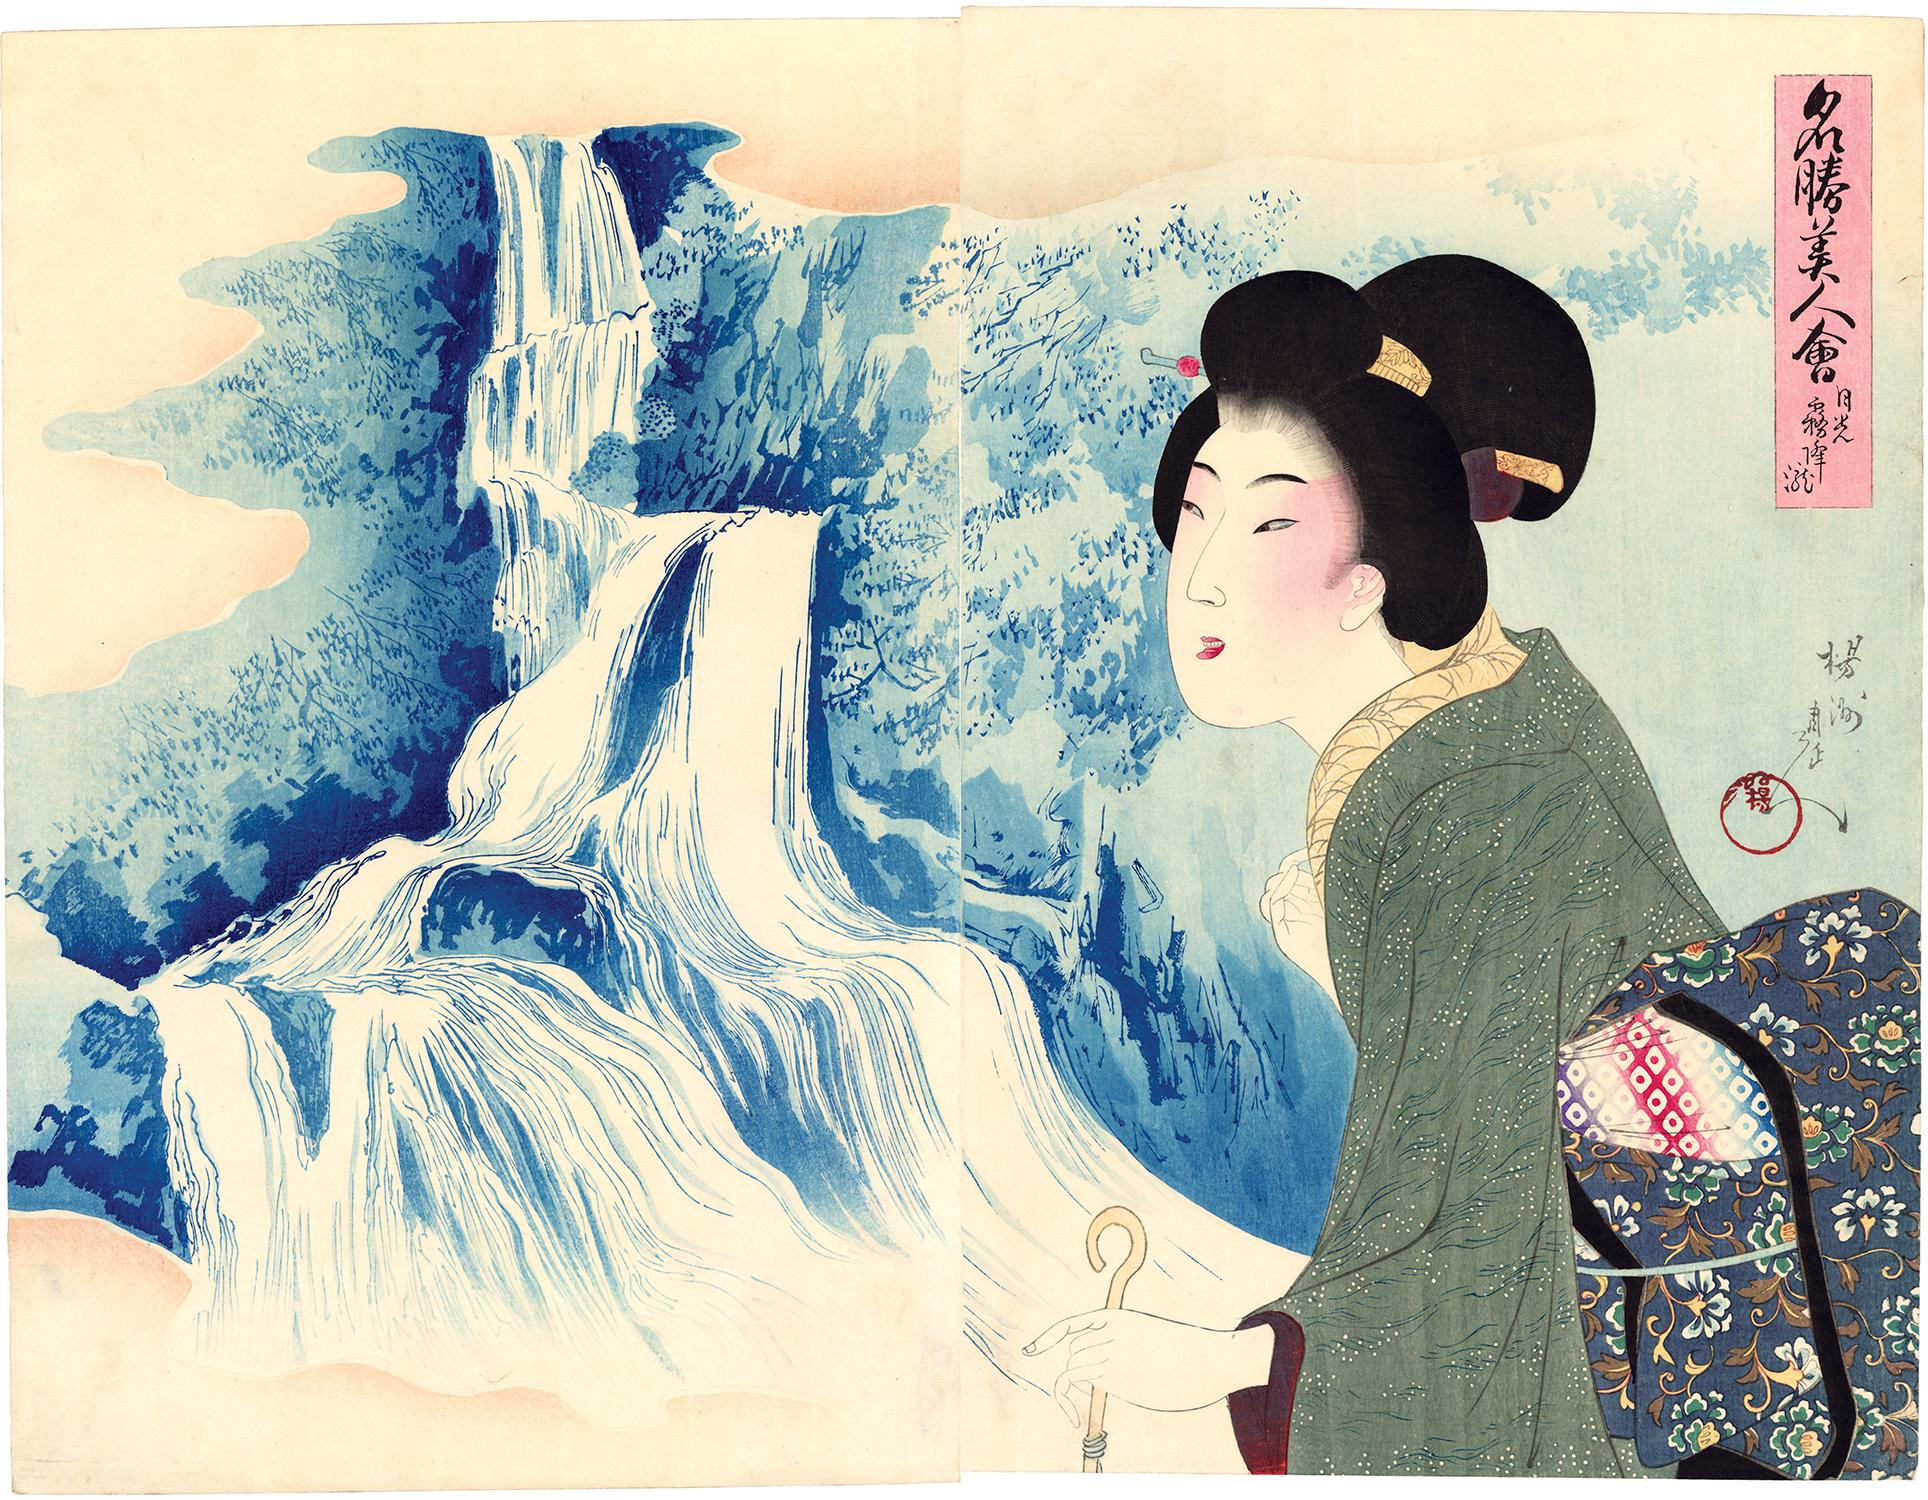 CHIKANOBU, Yoshu Landscape Print – Japanische japanische Schönheit, die an Kirifuri-Wasserfall erinnert